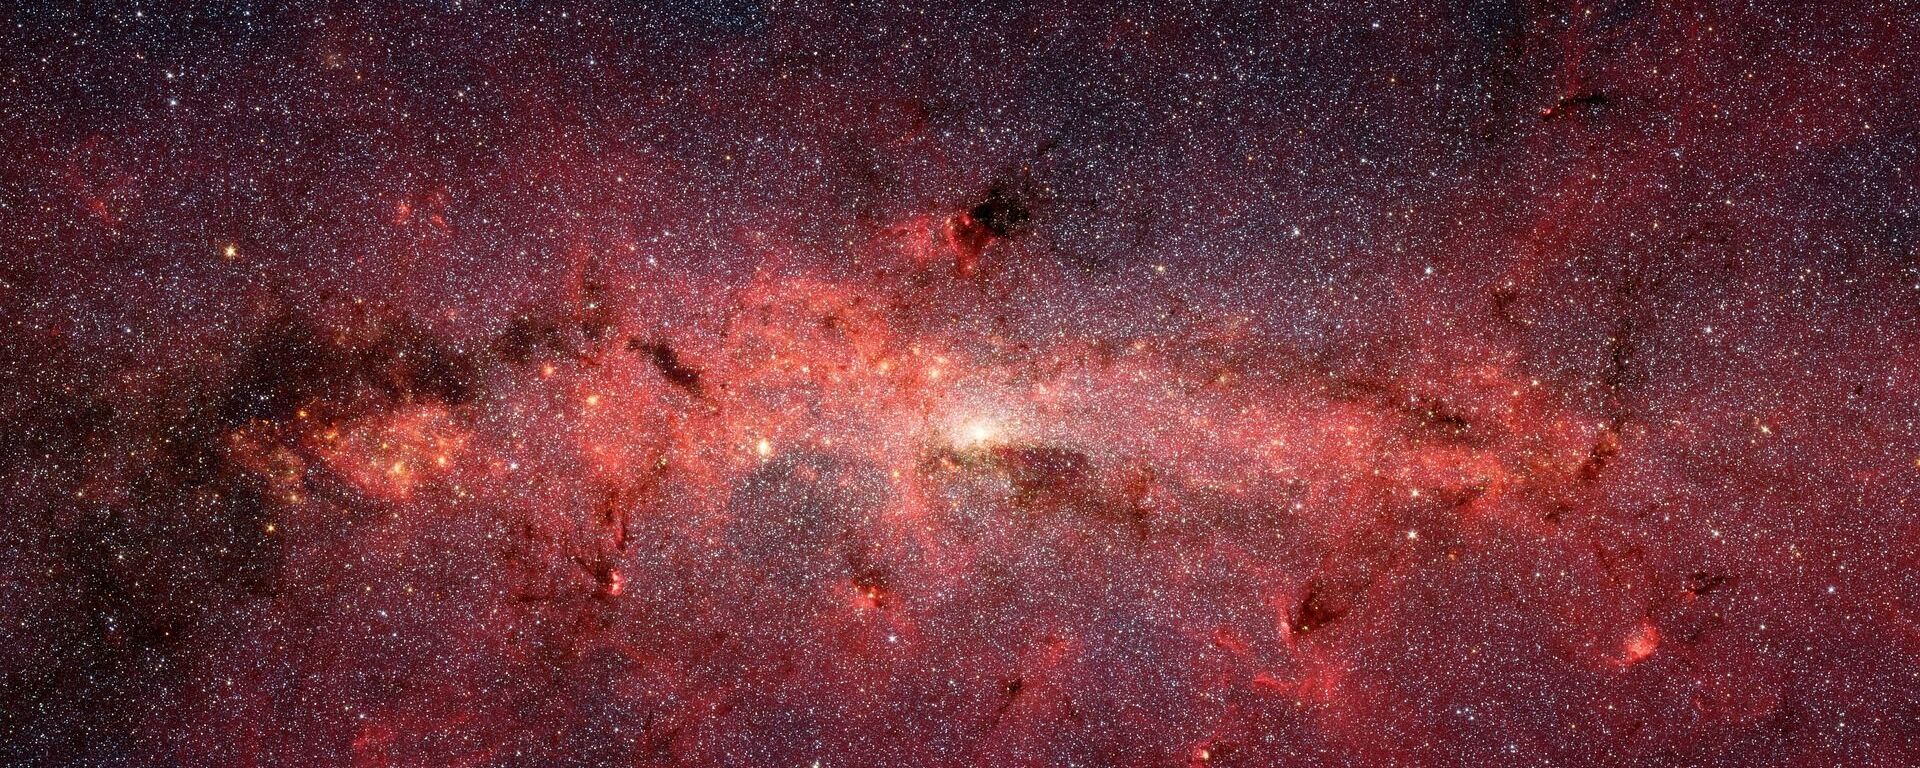 Da li se u jezgru Mlečnog puta nalazi crna rupa? - Sputnik Srbija, 1920, 18.01.2021